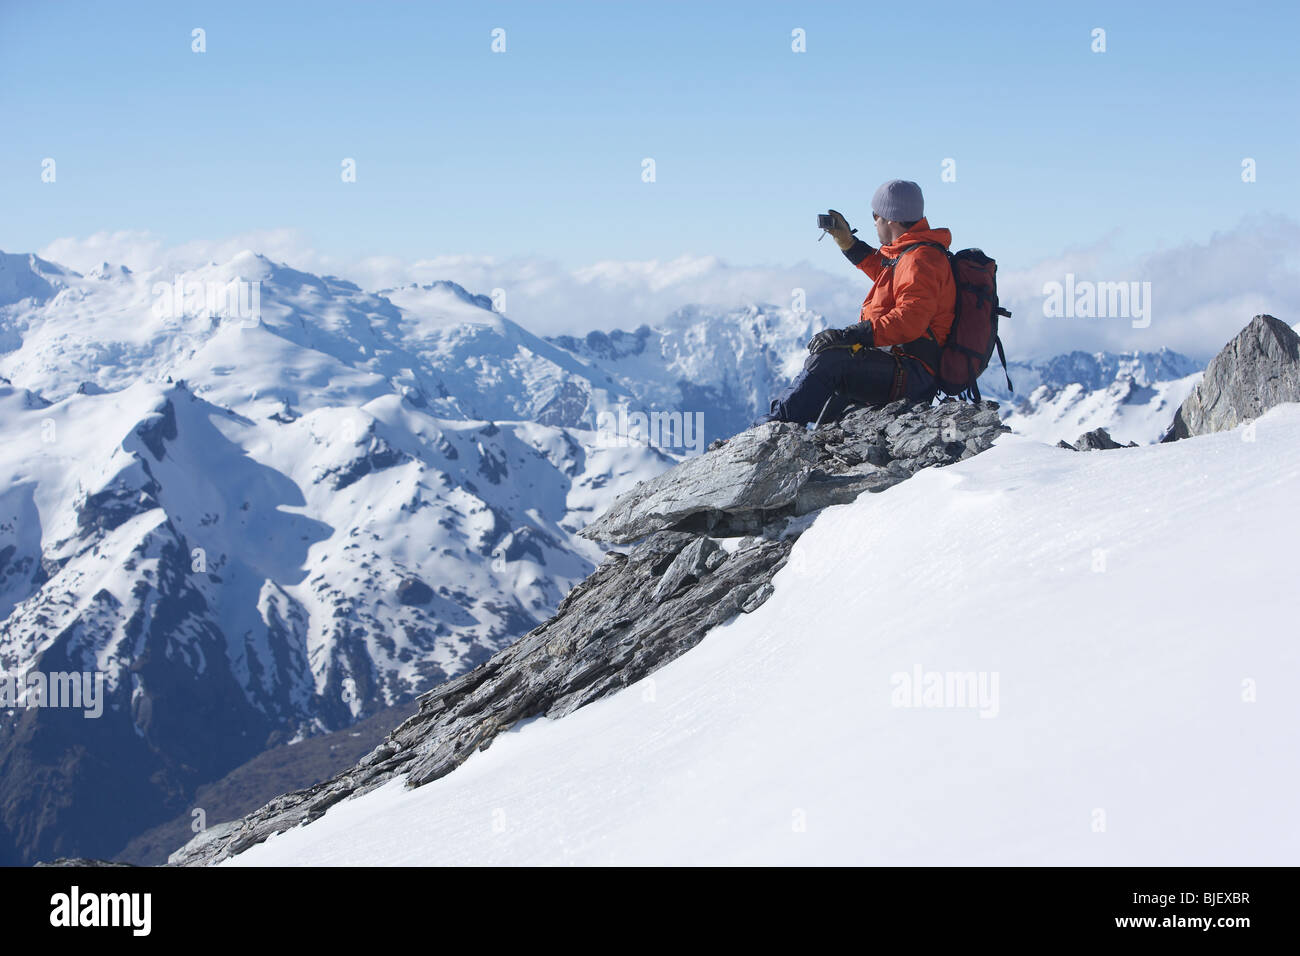 Mountain climber taking picture on mountain peak Stock Photo